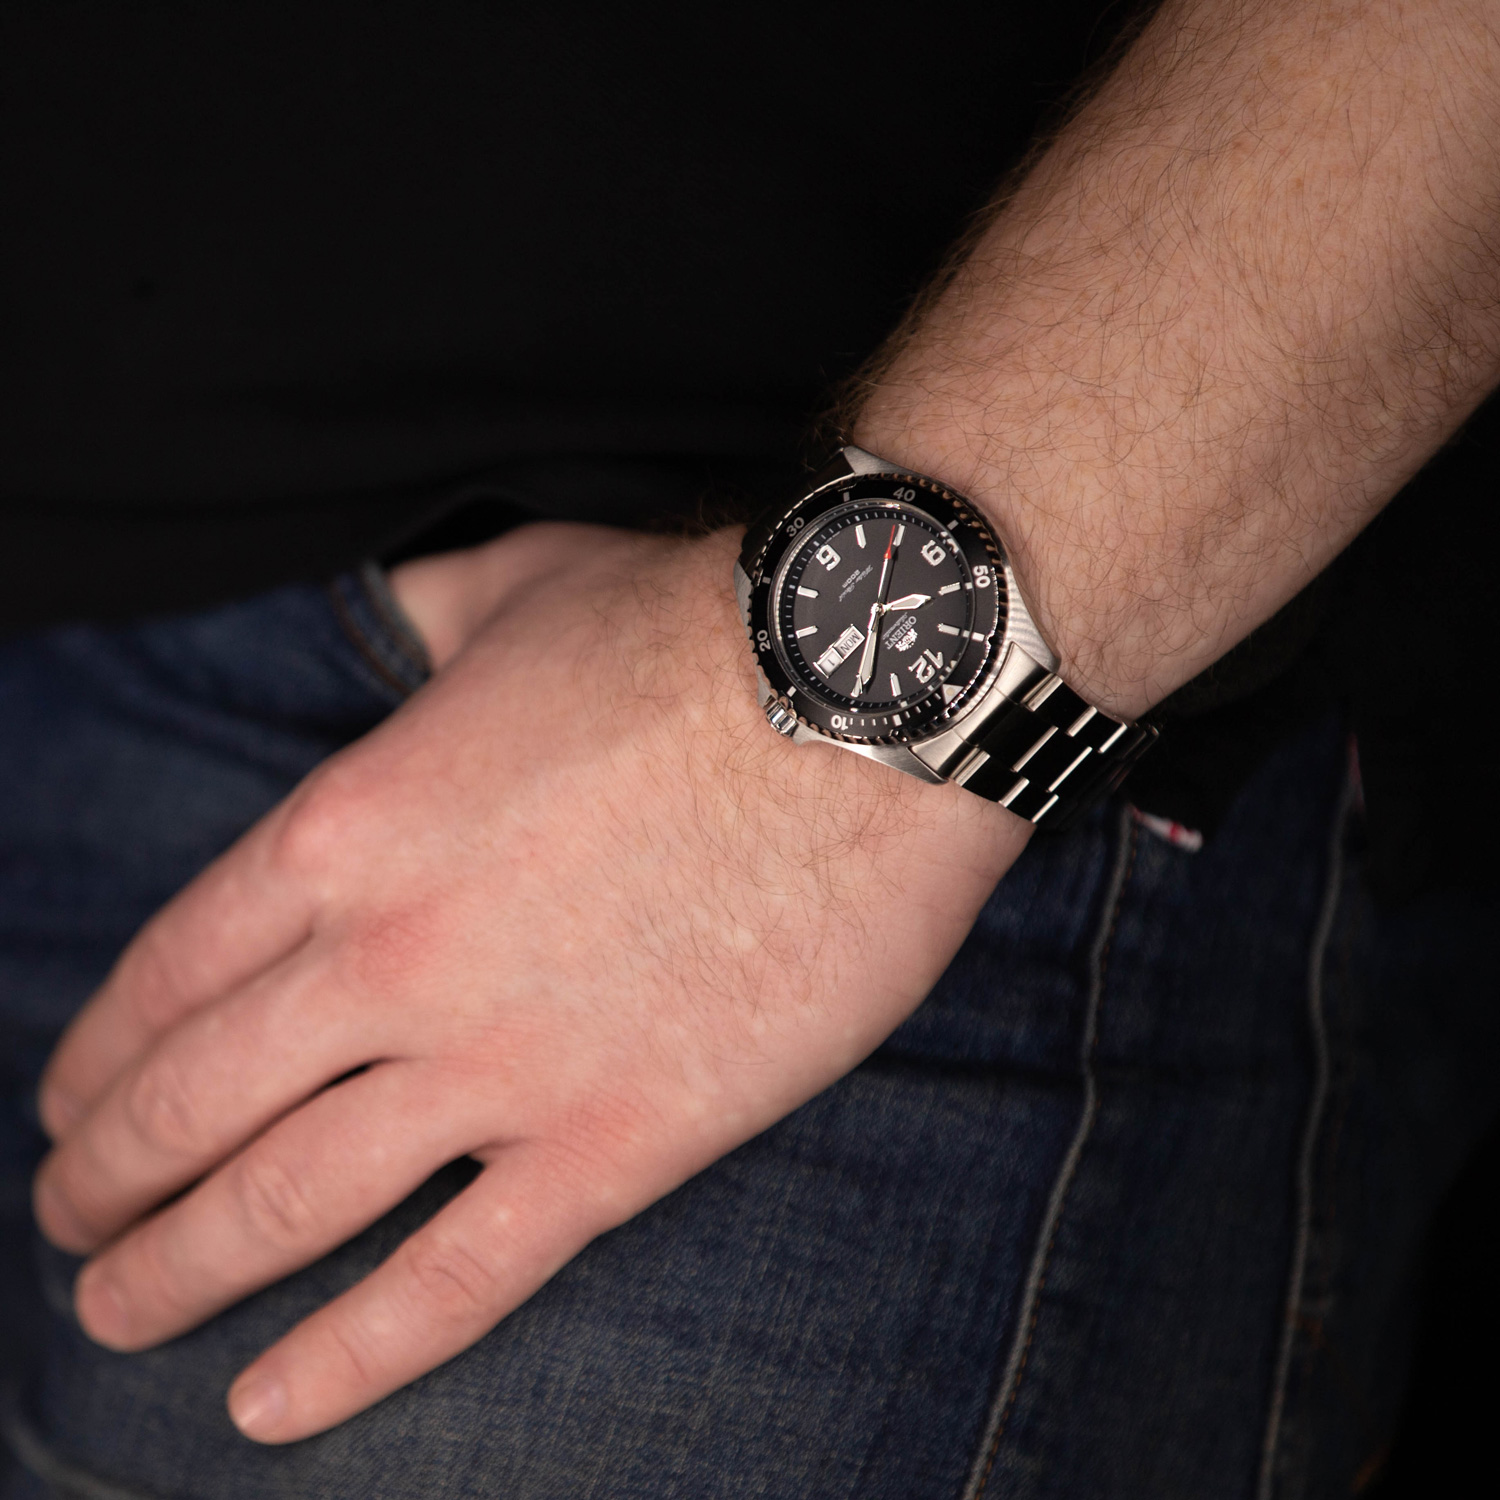 Часы Orient AA02001B - купить мужские наручные часы в интернет-магазине  Bestwatch.ru. Цена, фото, характеристики. - с доставкой по России.